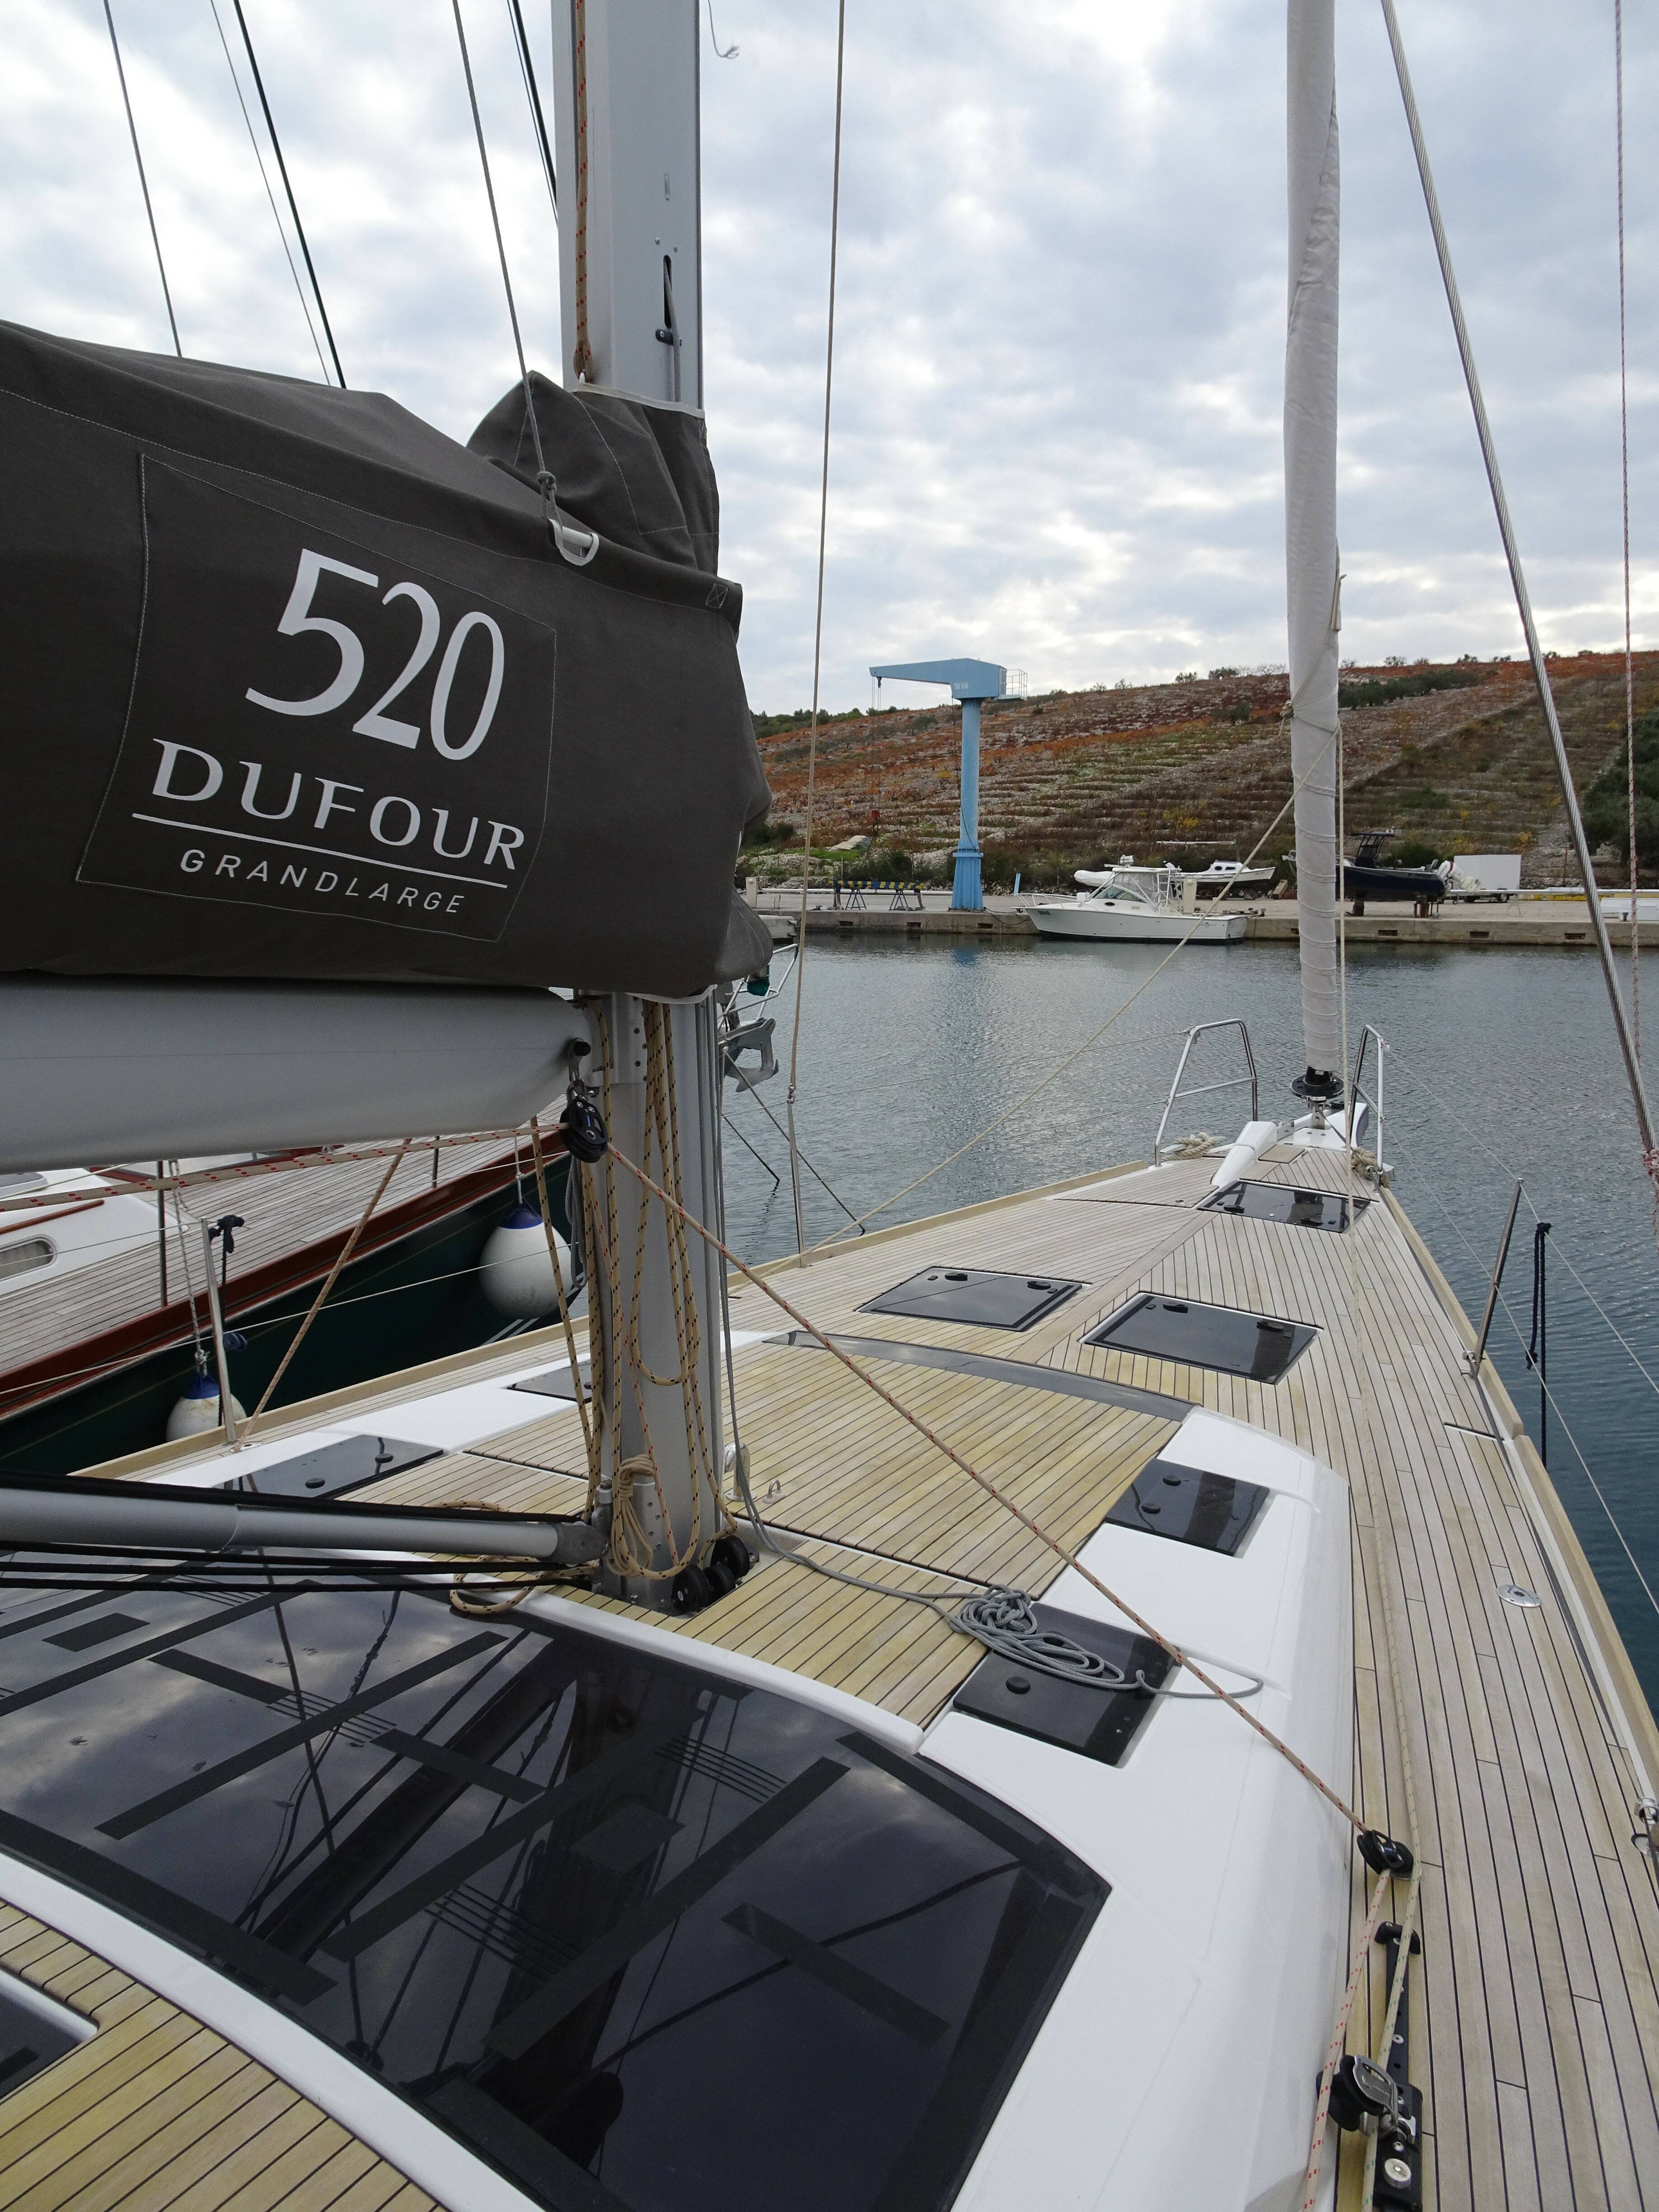 Dufour 520 GL, NOTUS 